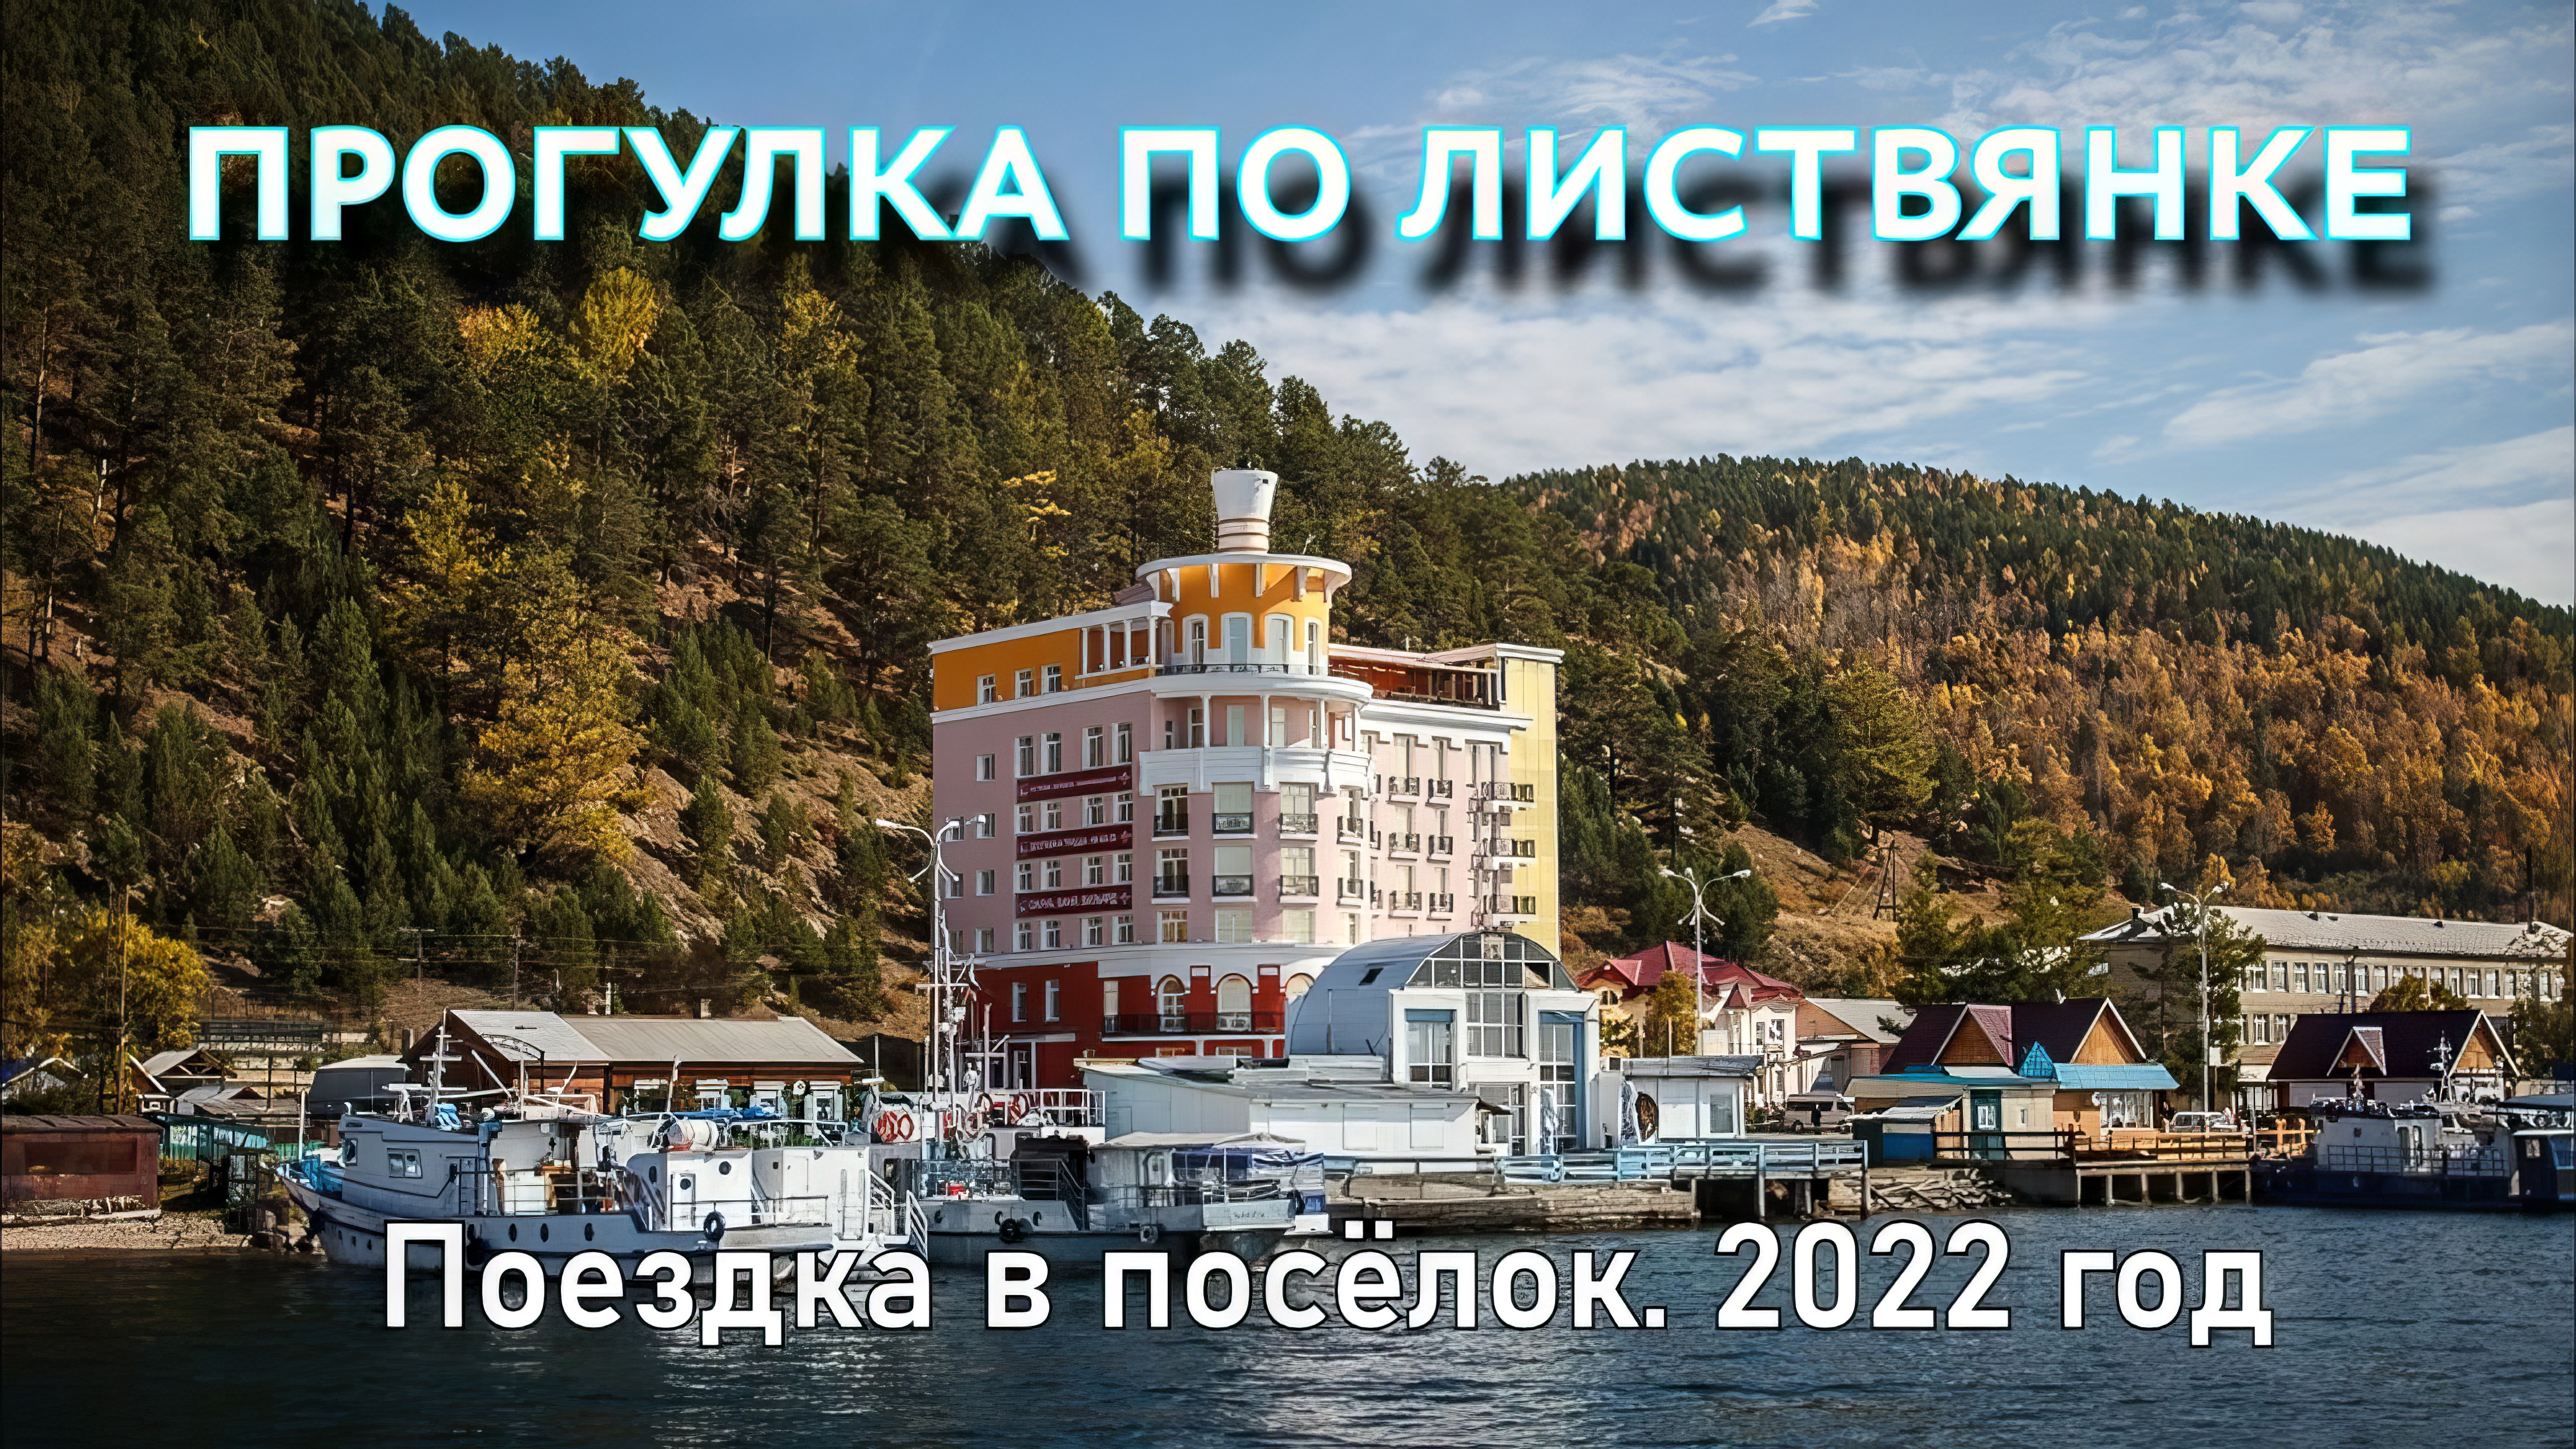 Поездка в Листвянку. Озеро Байкал. 7 мая 2022 года